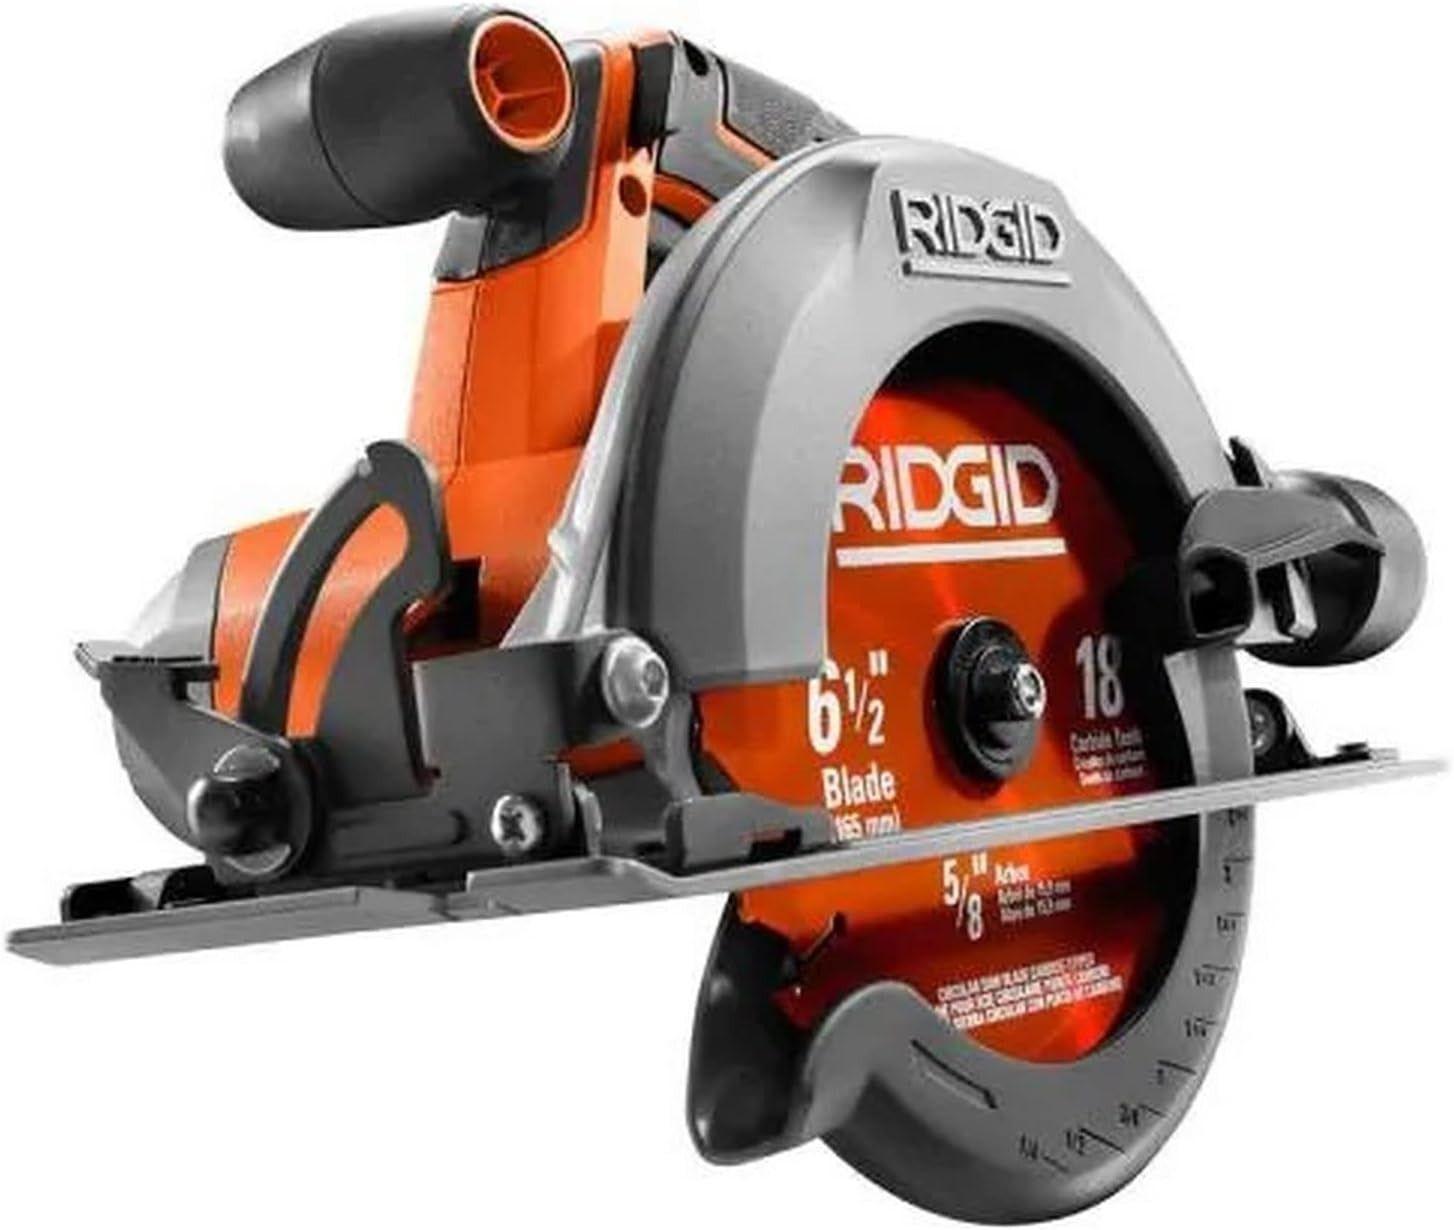 Ridgid  18-Volt Cordless 6 1/2 in. Circular Saw (Bare Tool - R8655) - Orange - Excellent